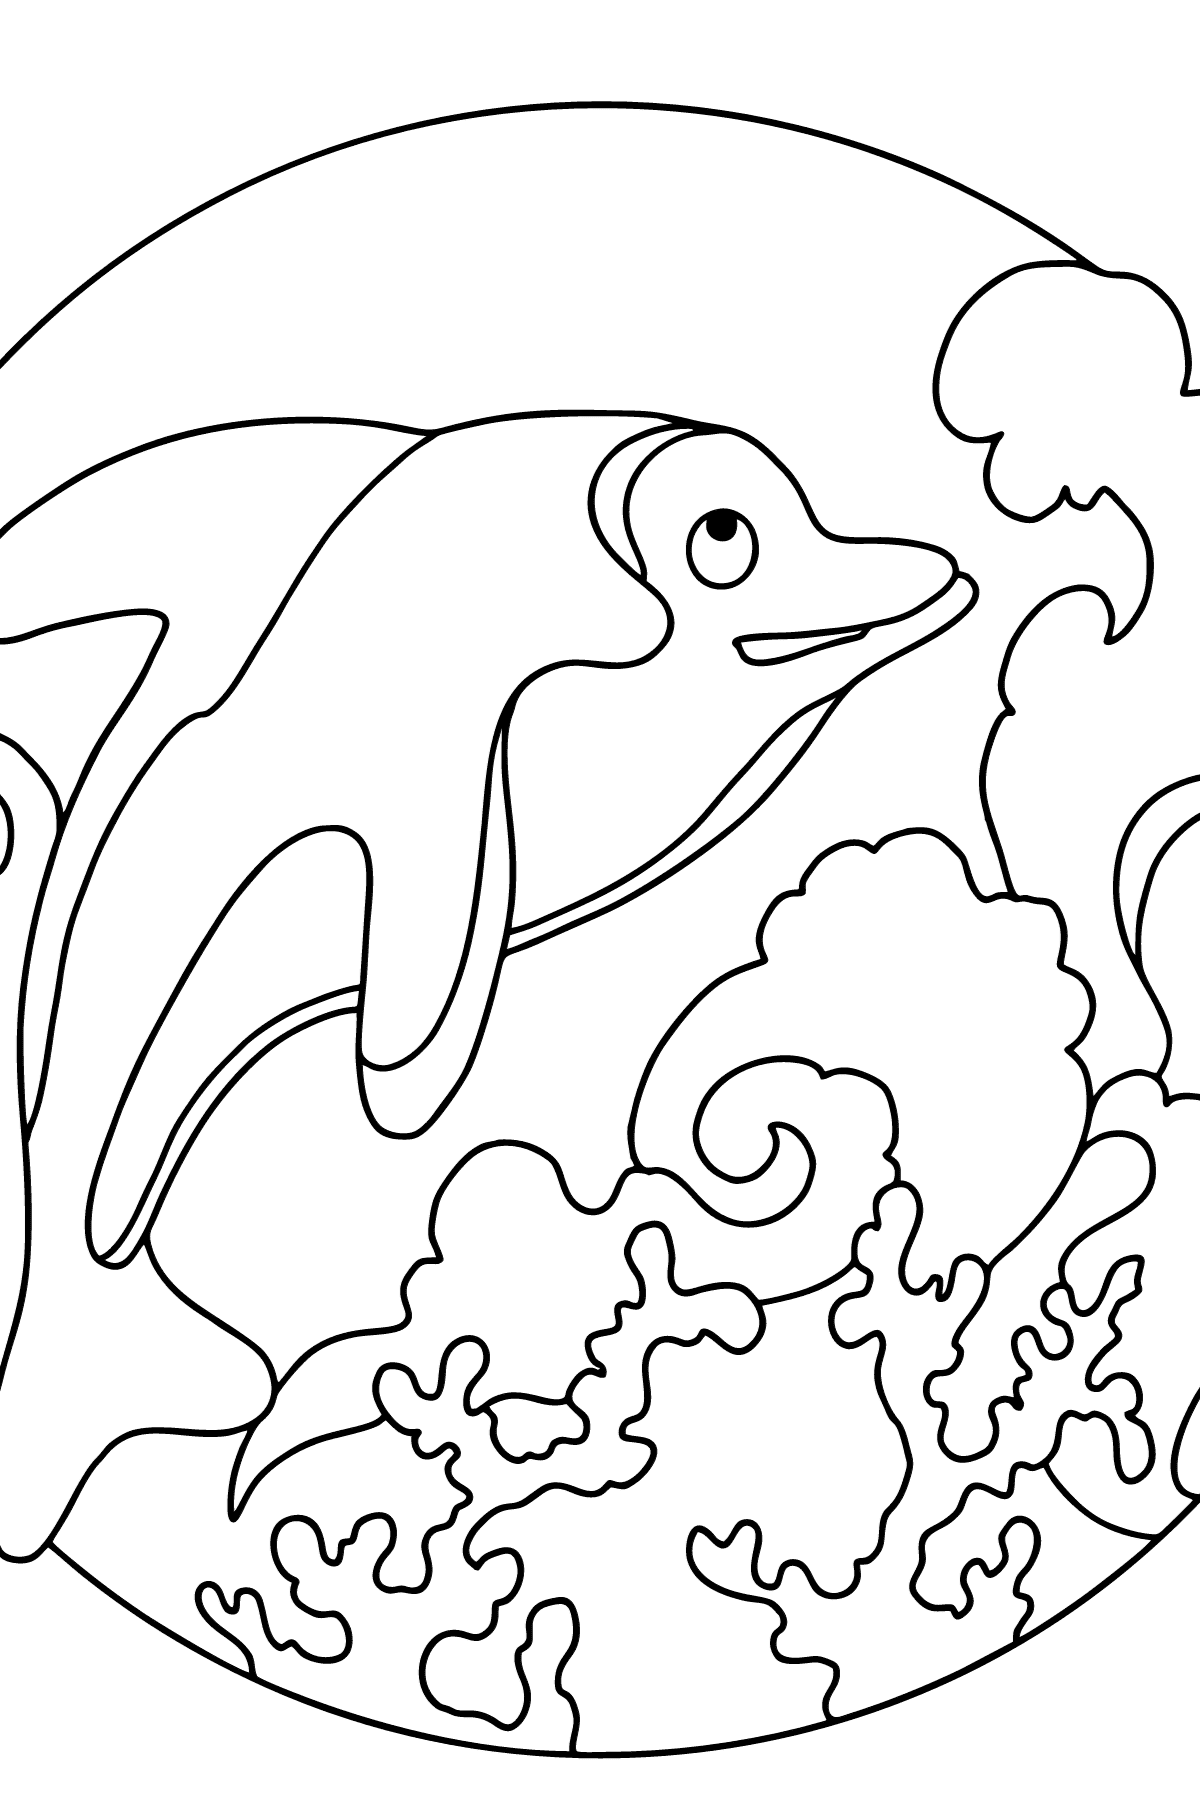 Tegning til fargelegging delfin - Tegninger til fargelegging for barn